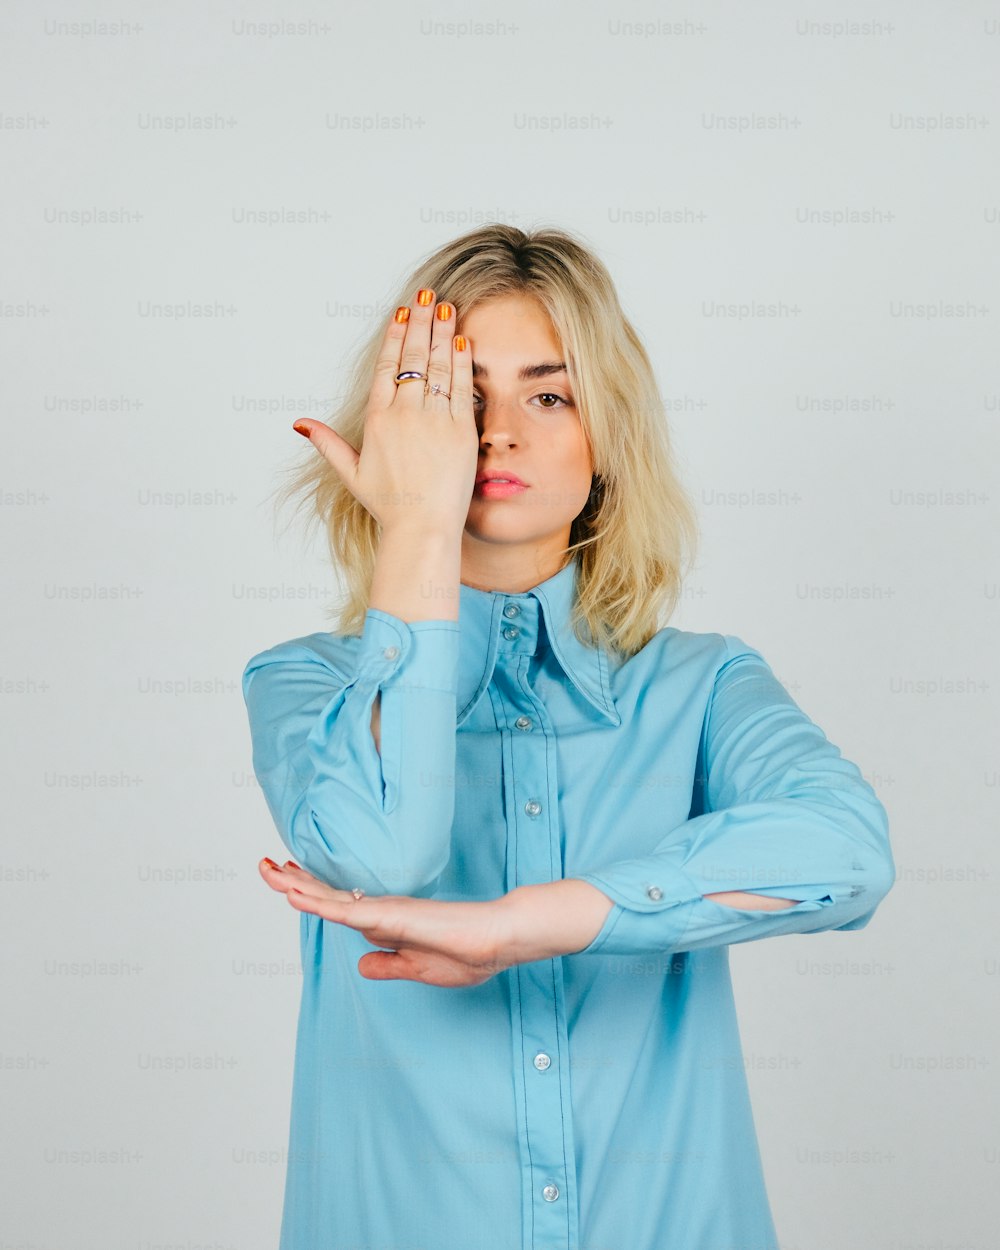 Eine Frau in einem blauen Hemd, die ihre Hände vor ihr Gesicht hält